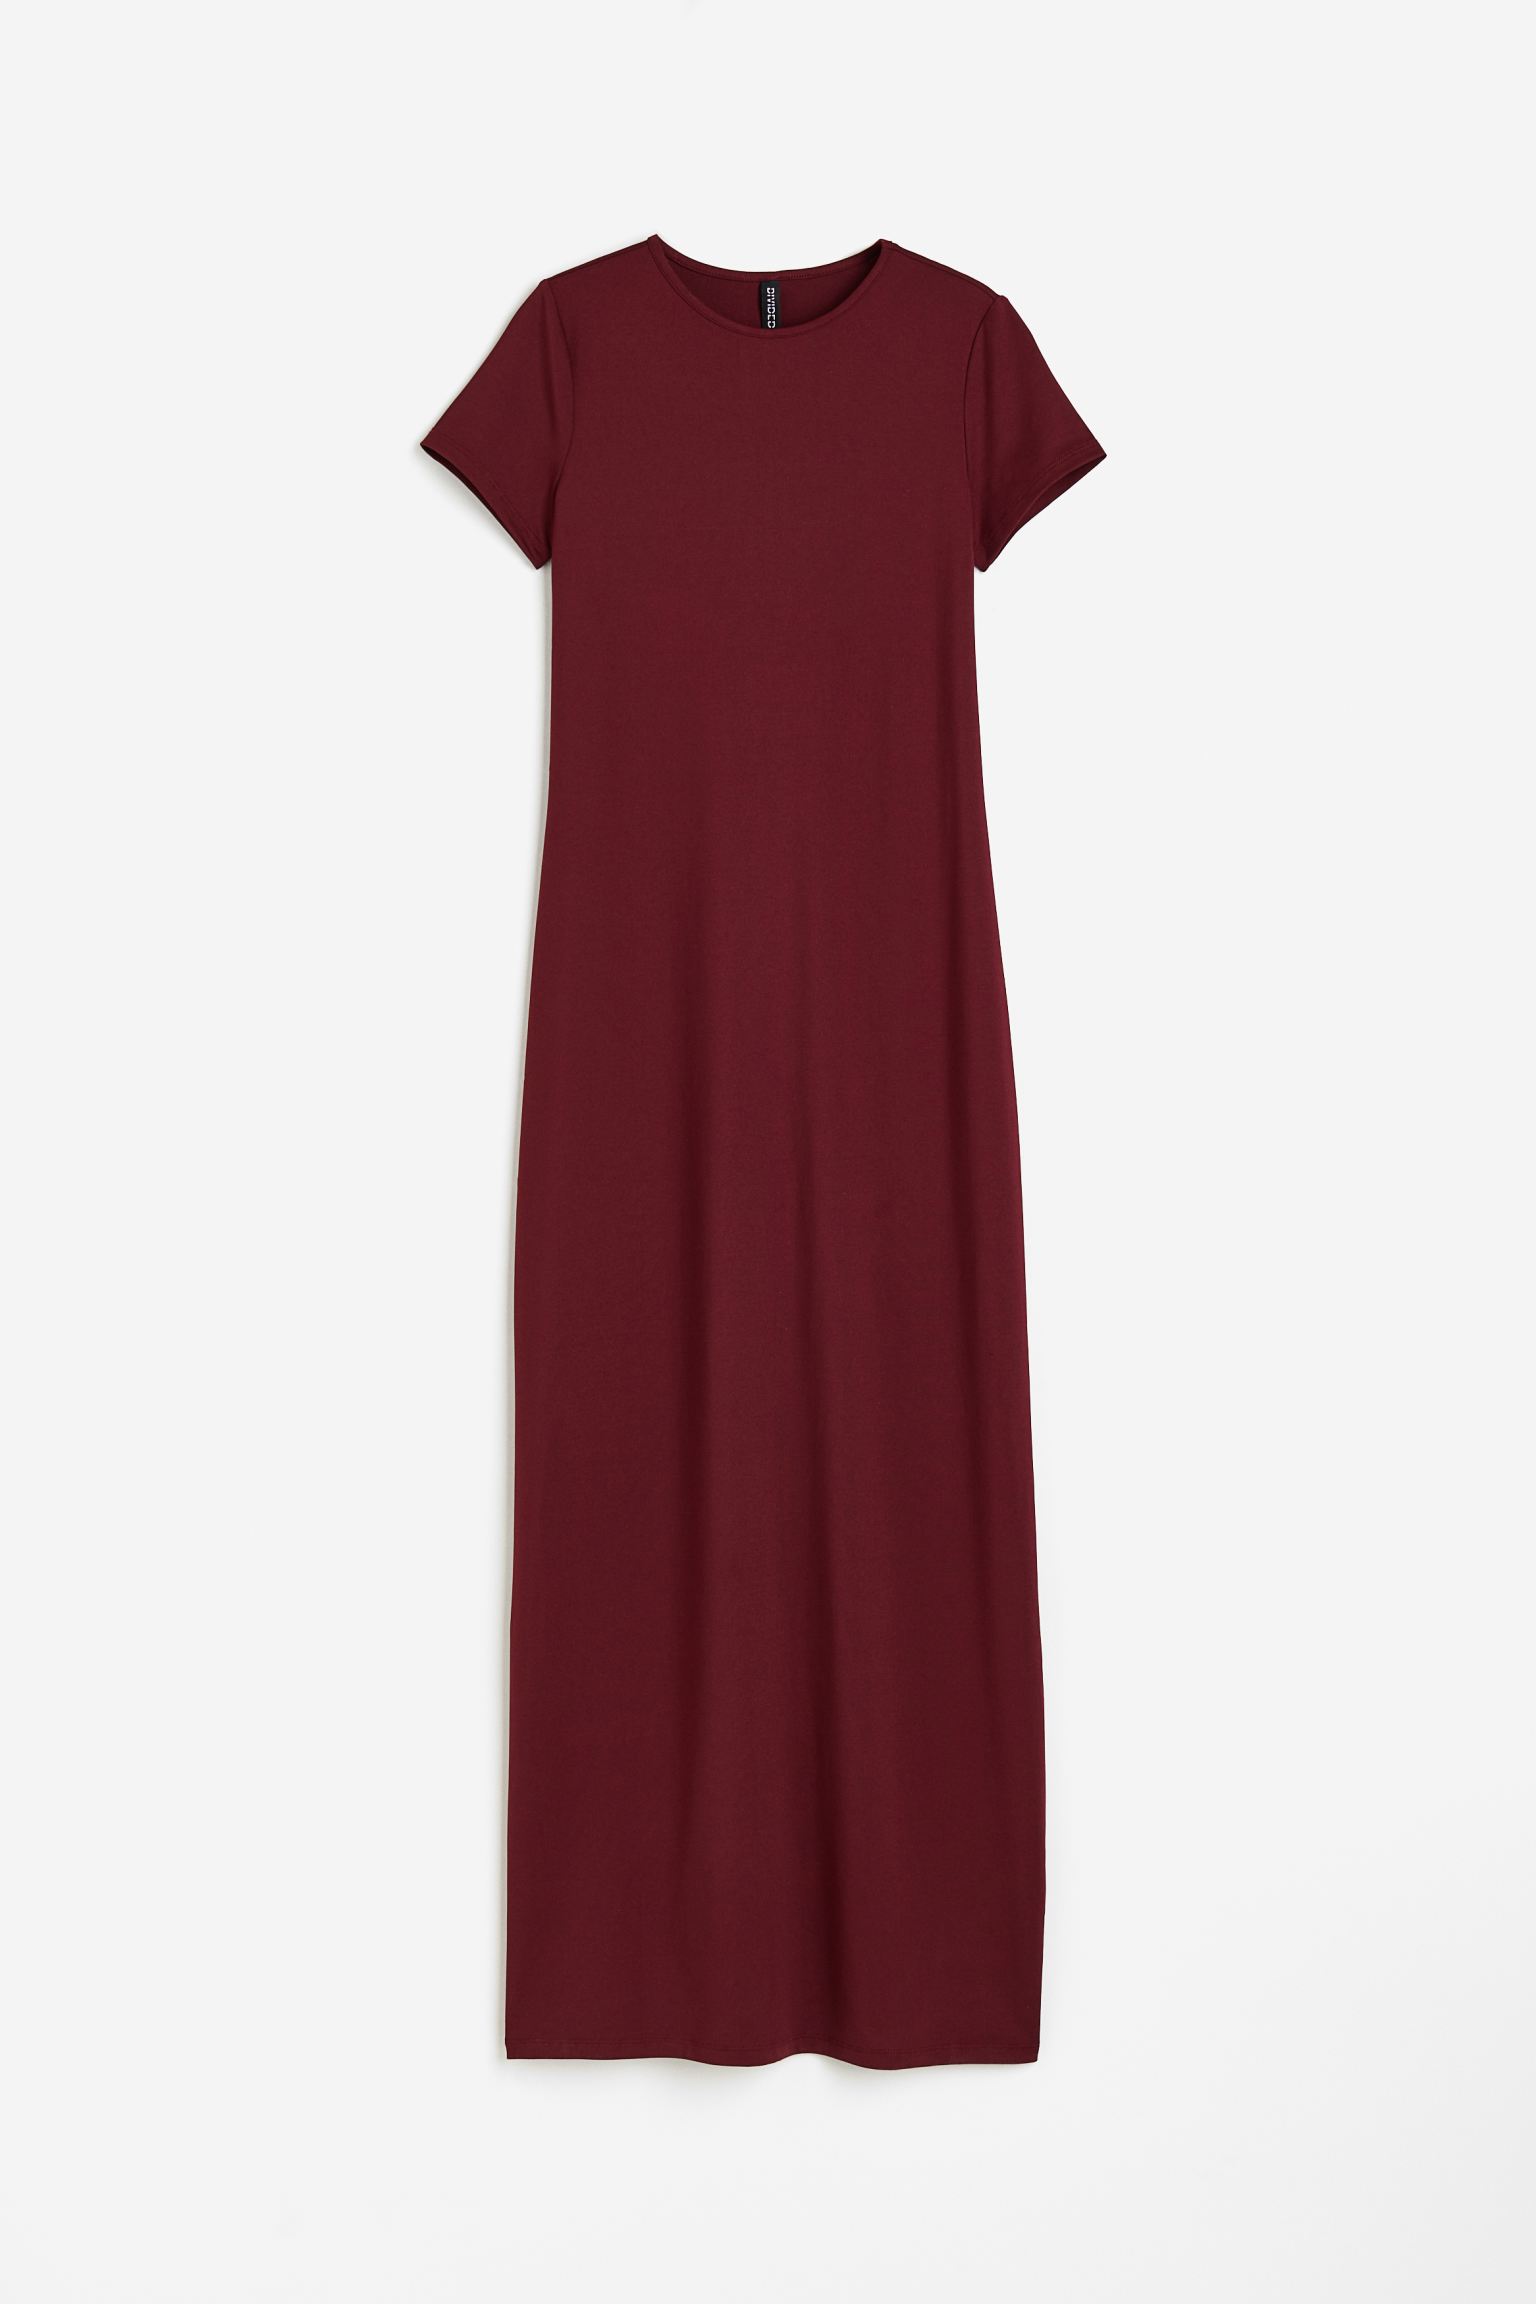 Платье H&M Jersey Bodycon, бордовый платье длинное круглый вырез короткие рукава с напуском 52 зеленый